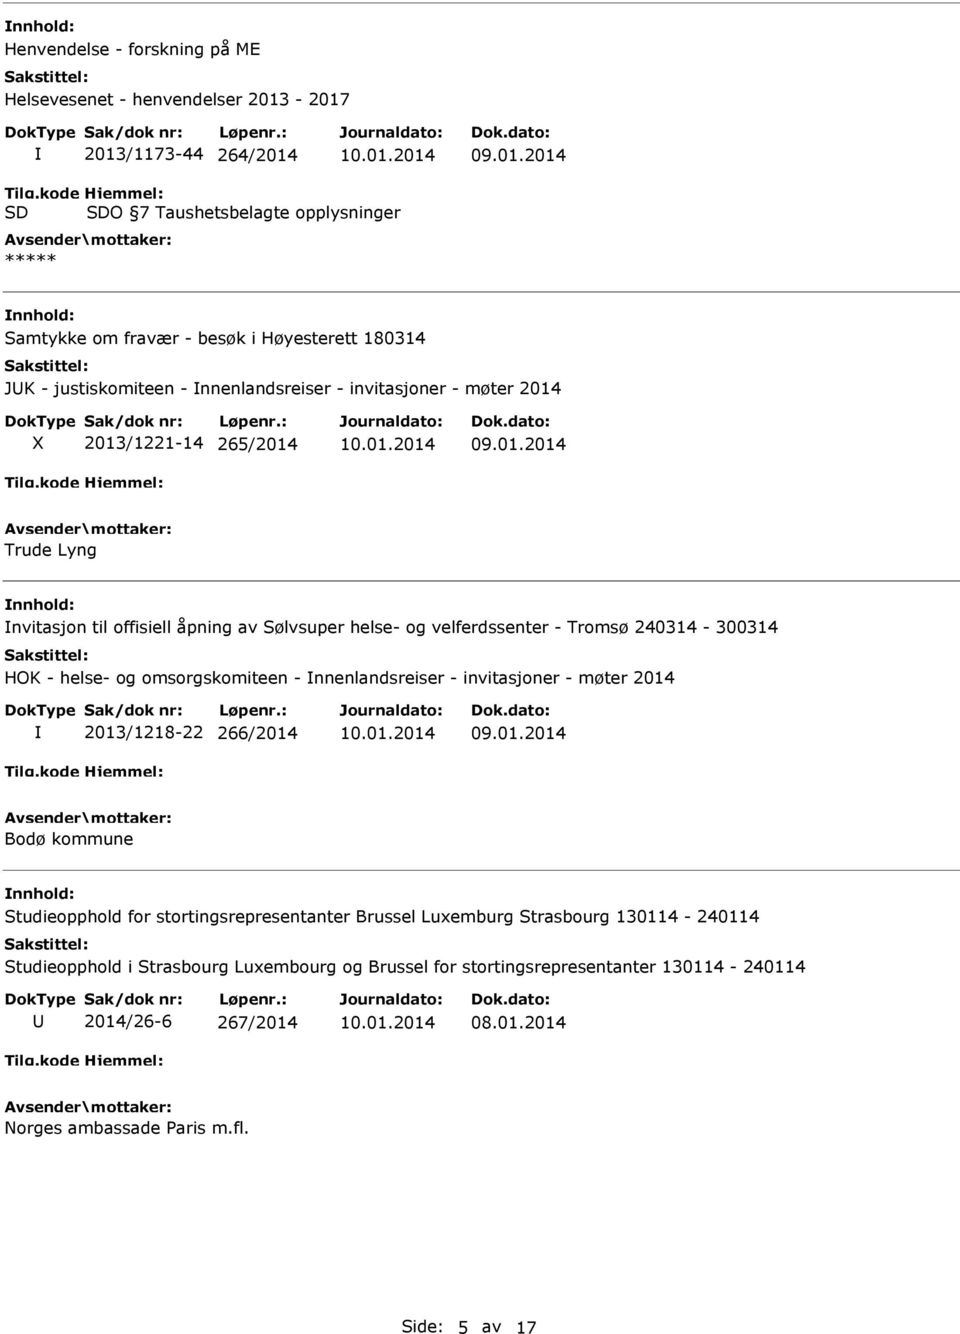 265/2014 Trude Lyng nvitasjon til offisiell åpning av Sølvsuper helse- og velferdssenter - Tromsø 240314-300314 HOK - helse- og omsorgskomiteen - nnenlandsreiser - invitasjoner - møter